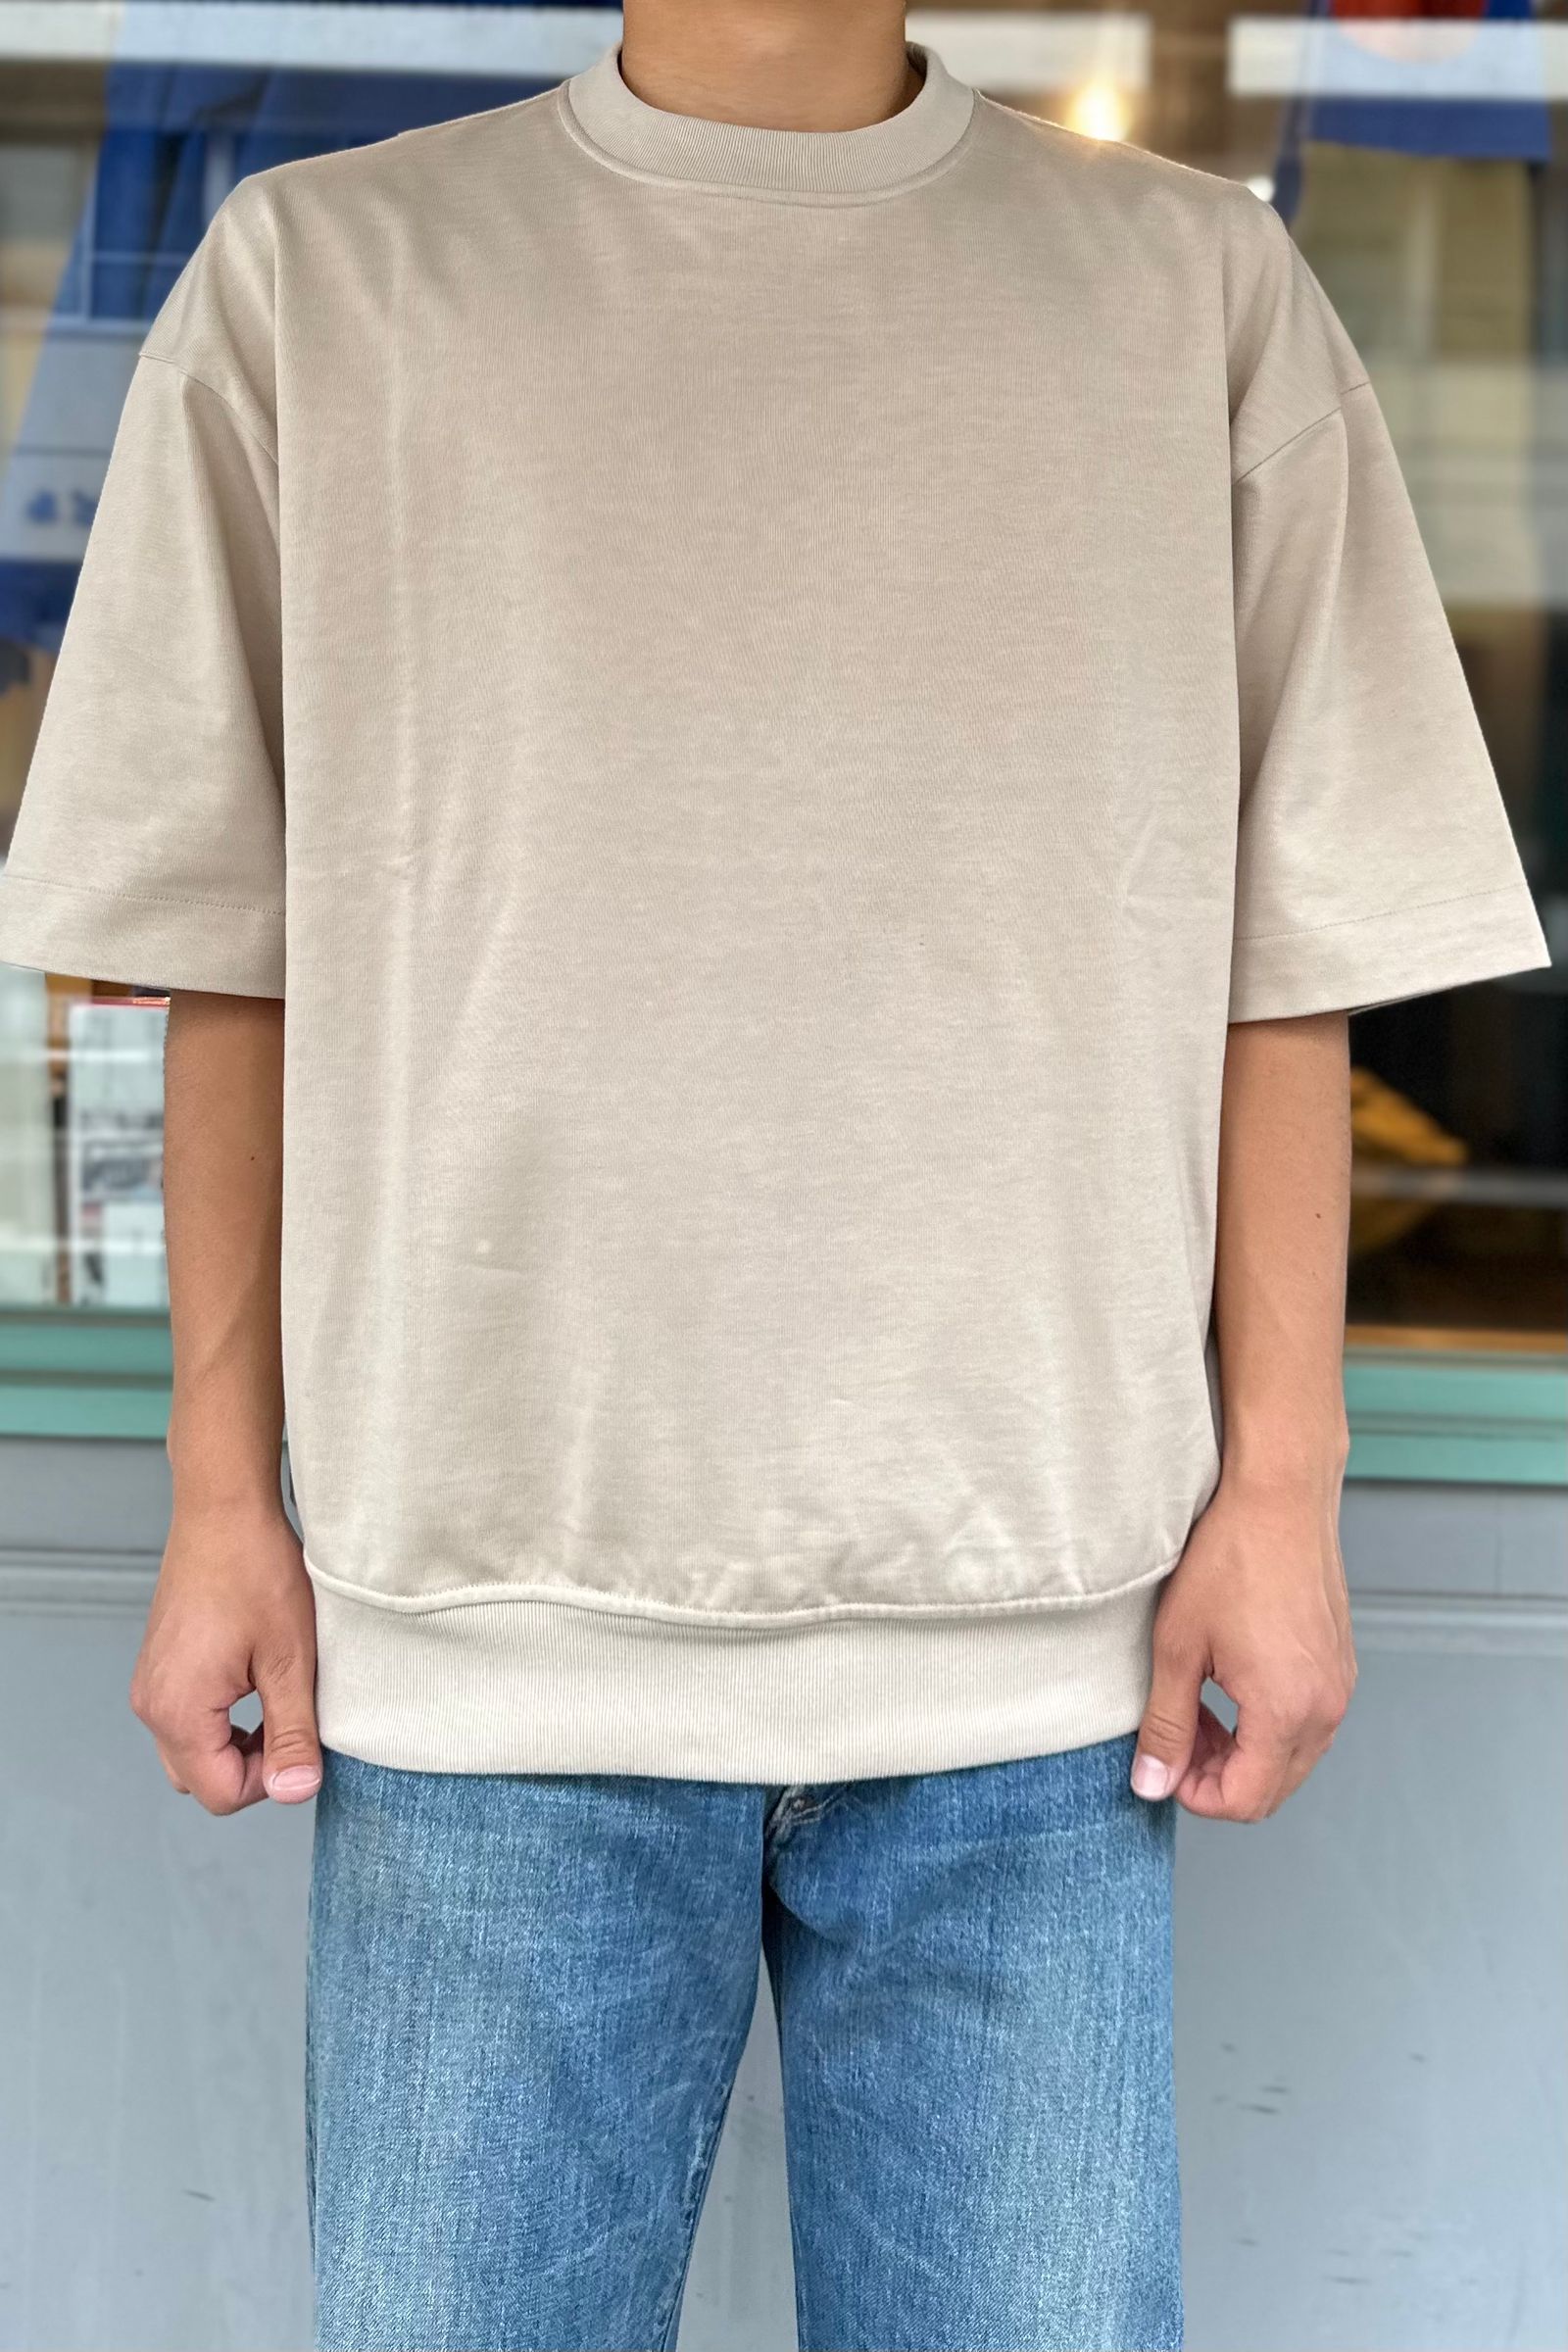 WEWILL - waistband t-shirt -s.beige- 23ss | asterisk